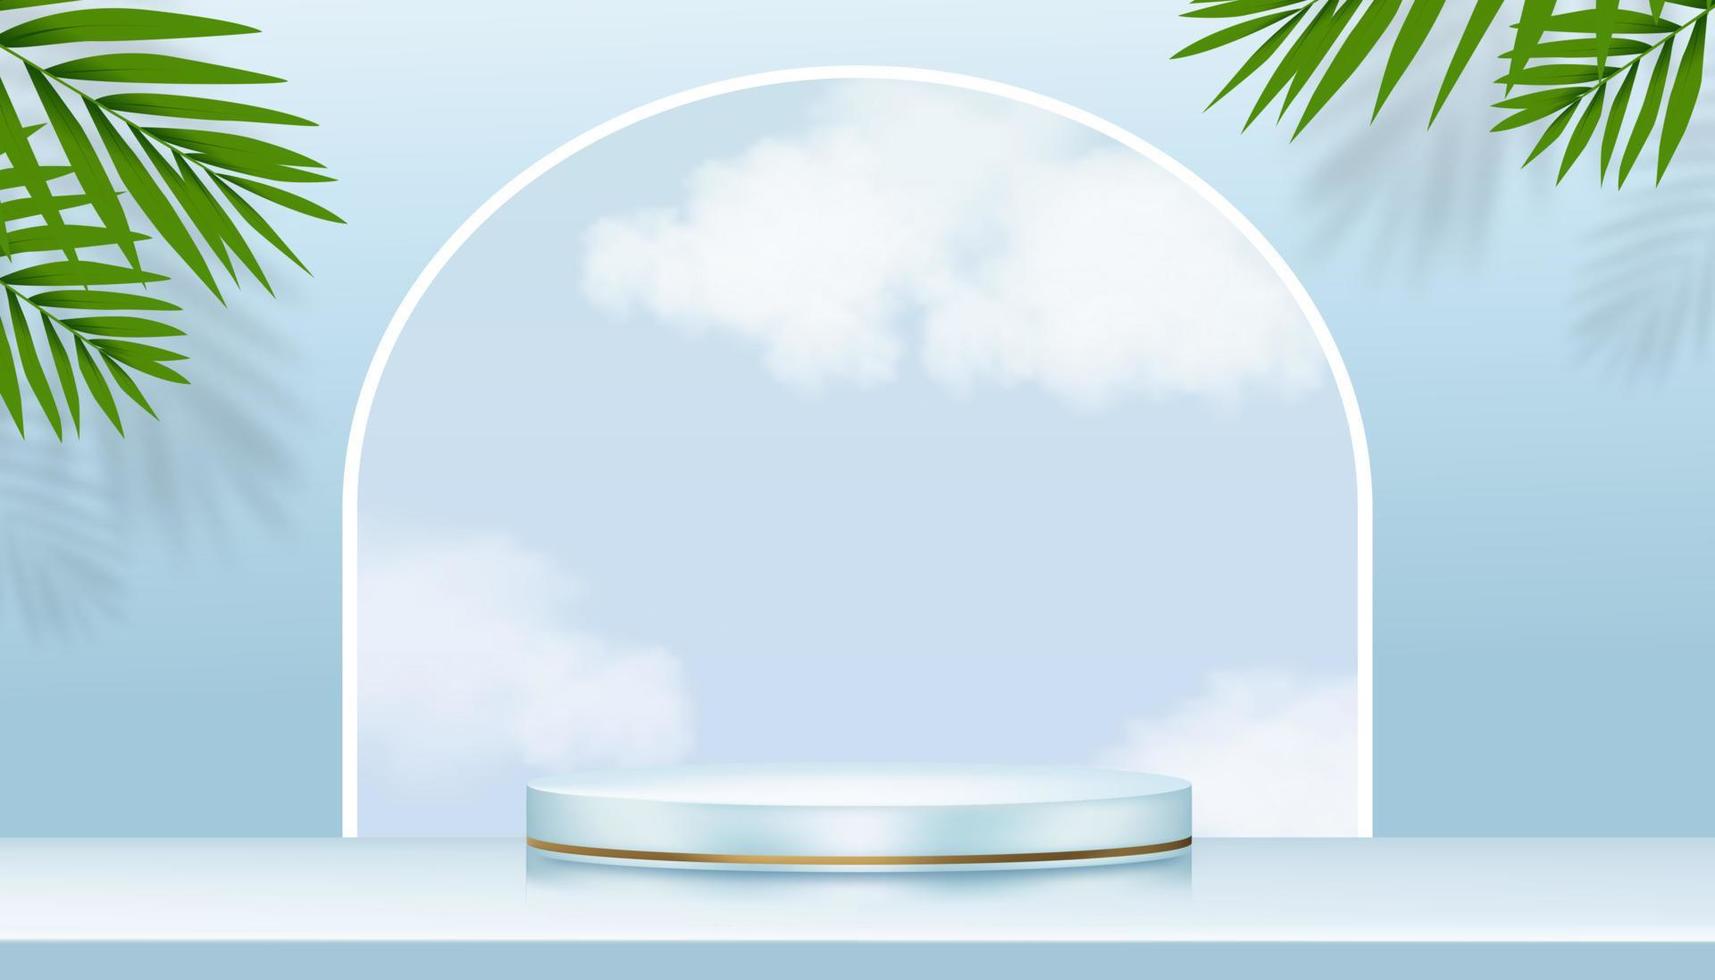 bakgrund bakgrund visa med 3d podium cylinder stå, blå himmel, moln och kokos handflatan löv på vägg, vektor horisont baner piedestal plattform för vår, sommar av skönhet, spa produkt presentation